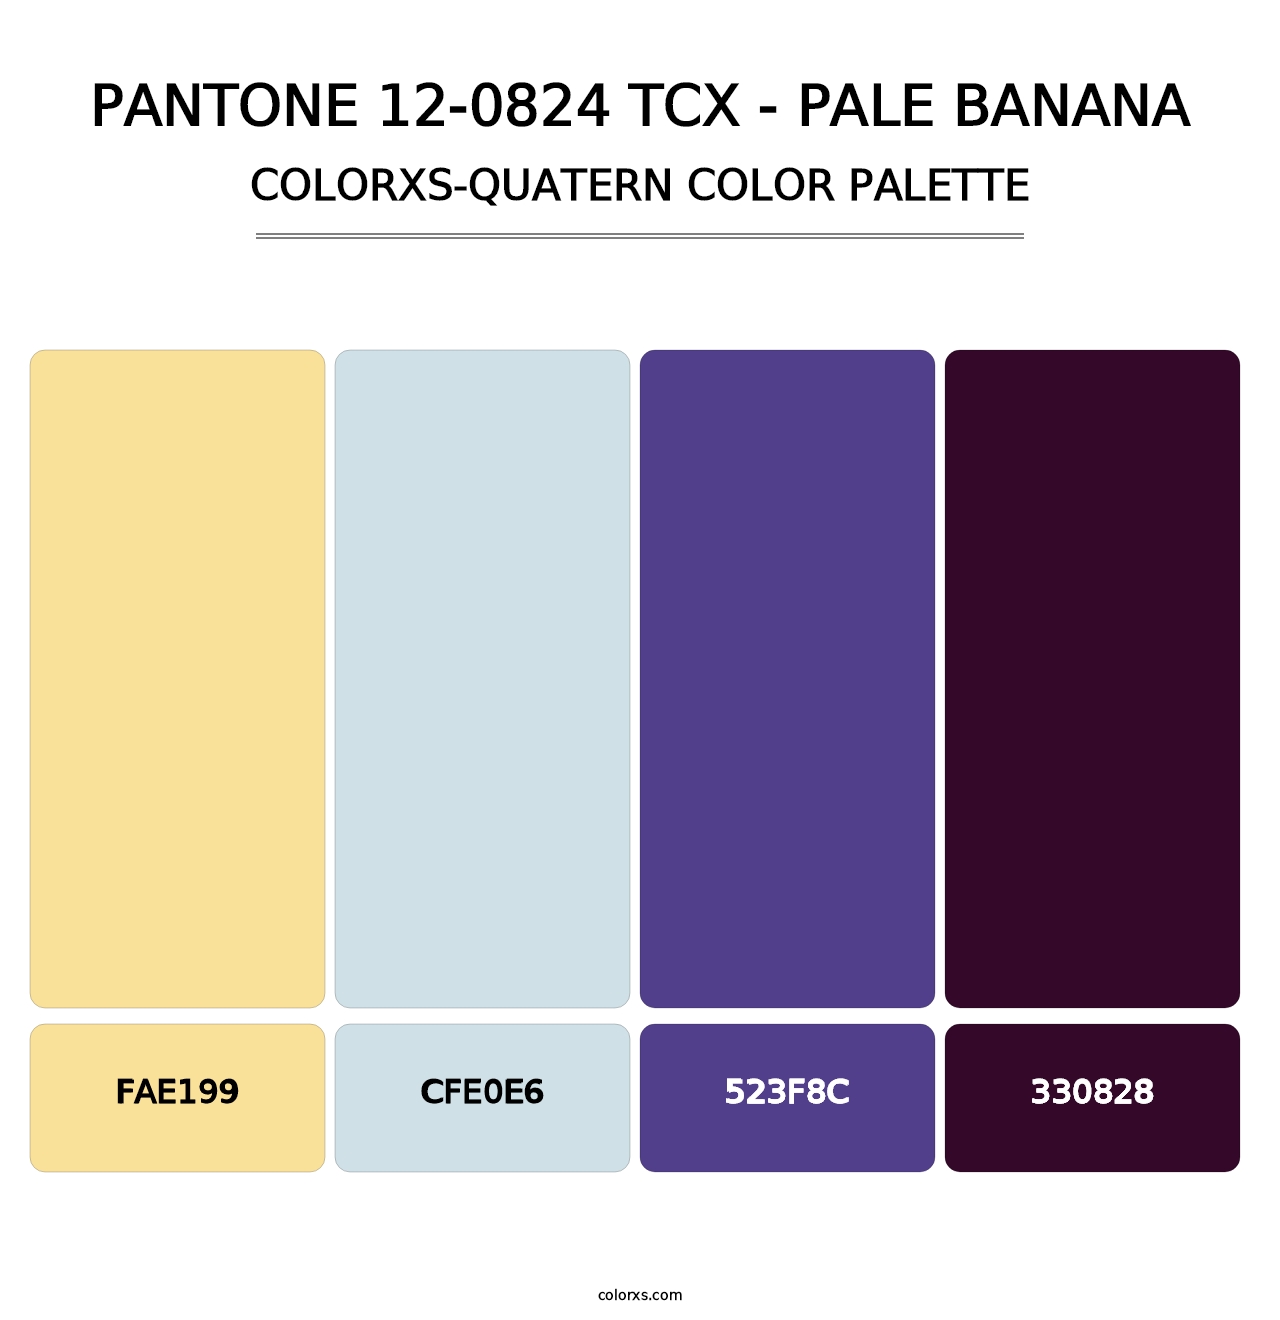 PANTONE 12-0824 TCX - Pale Banana - Colorxs Quatern Palette